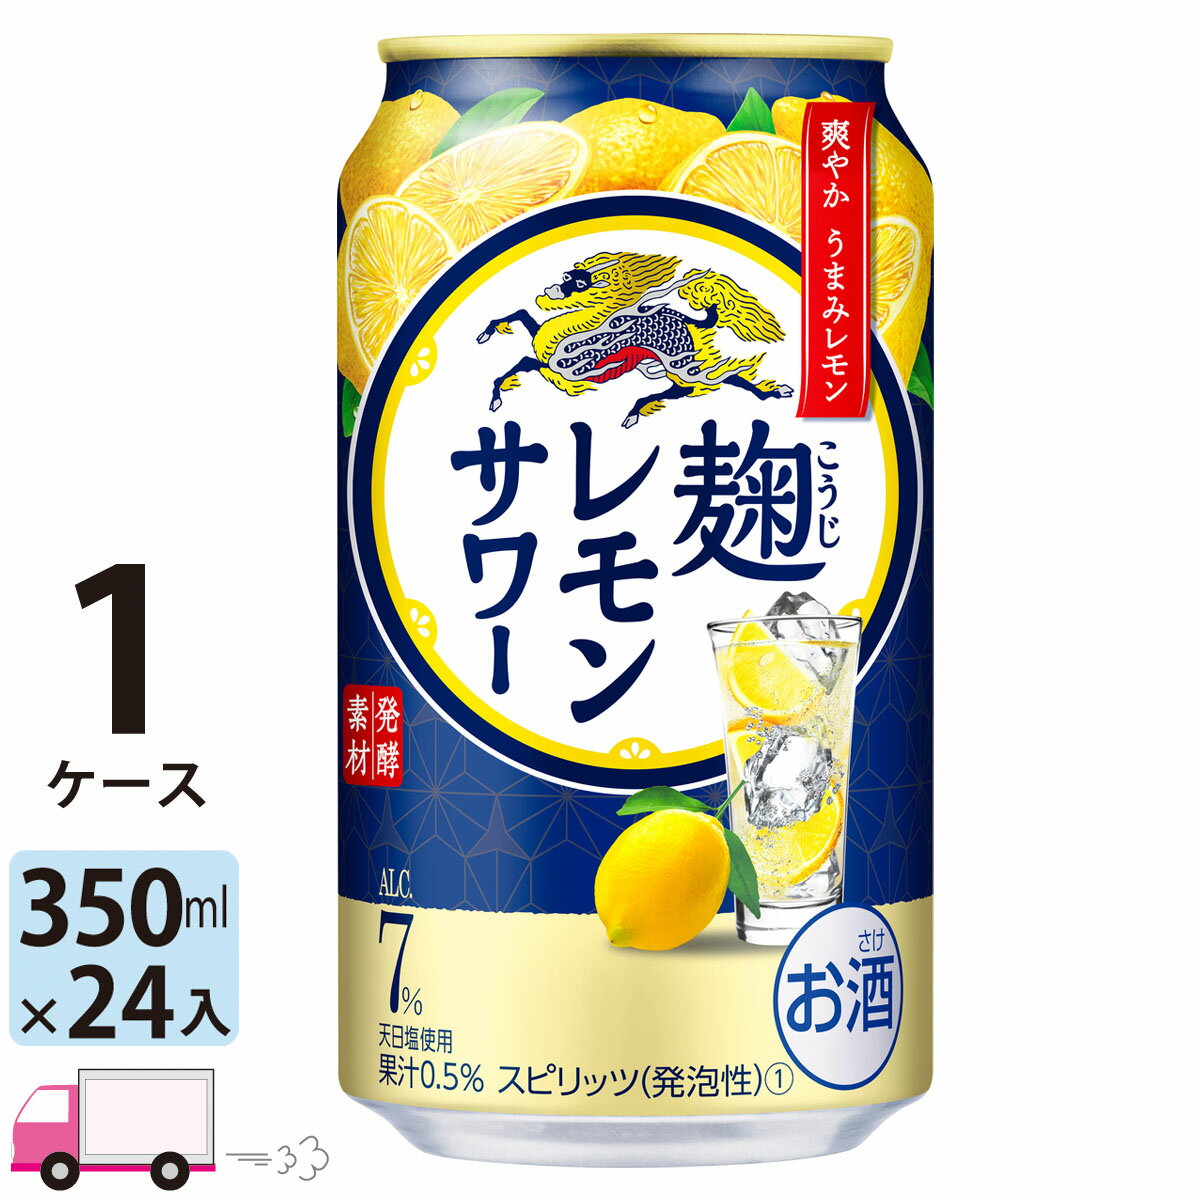 キリン 麹レモンサワー 350ml缶×1ケース (24本) (一部地域除く)